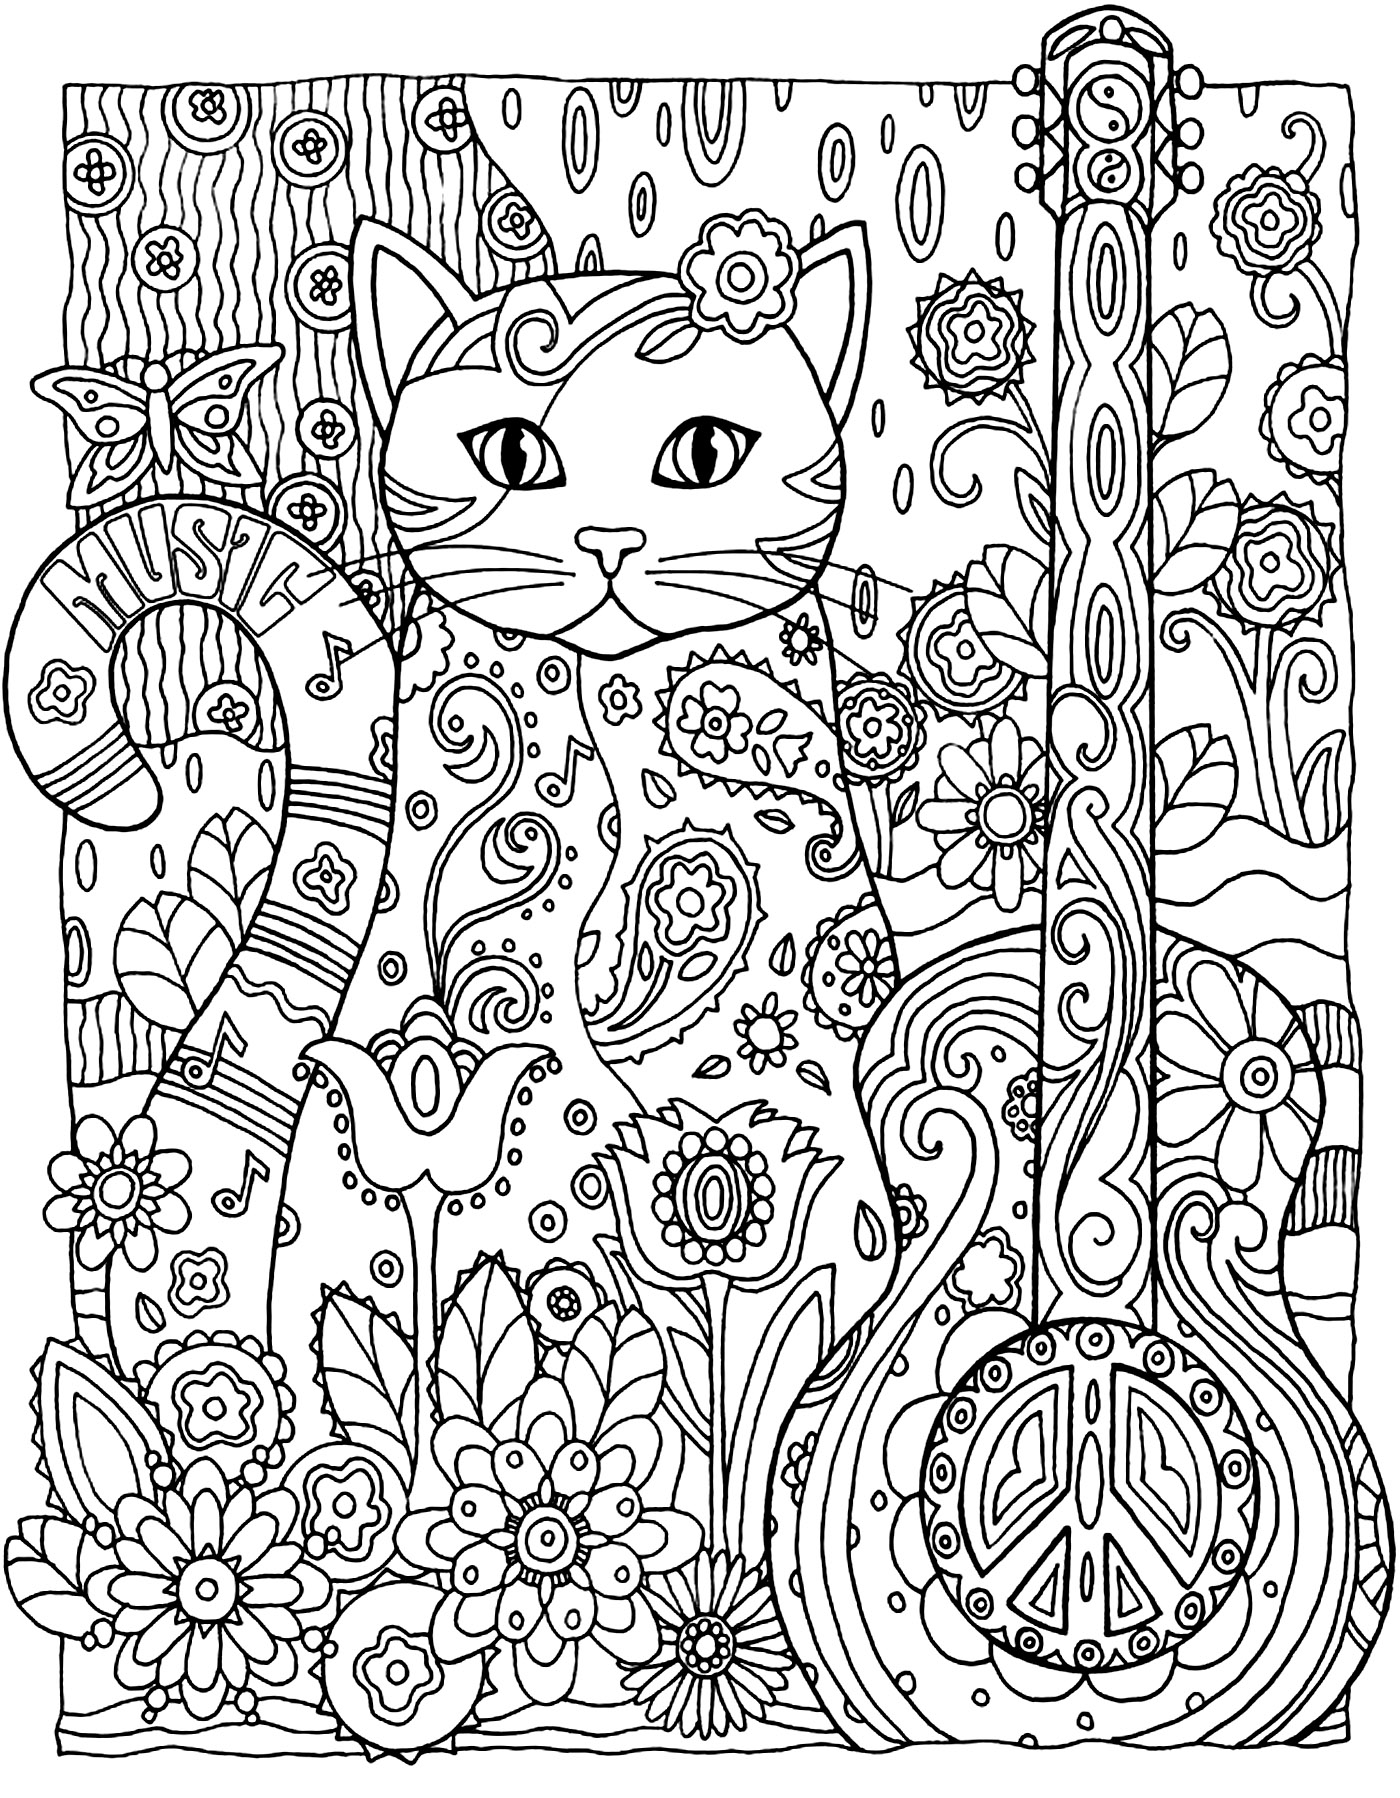 Desenho gatinhos tumblr – Páginal Inicial